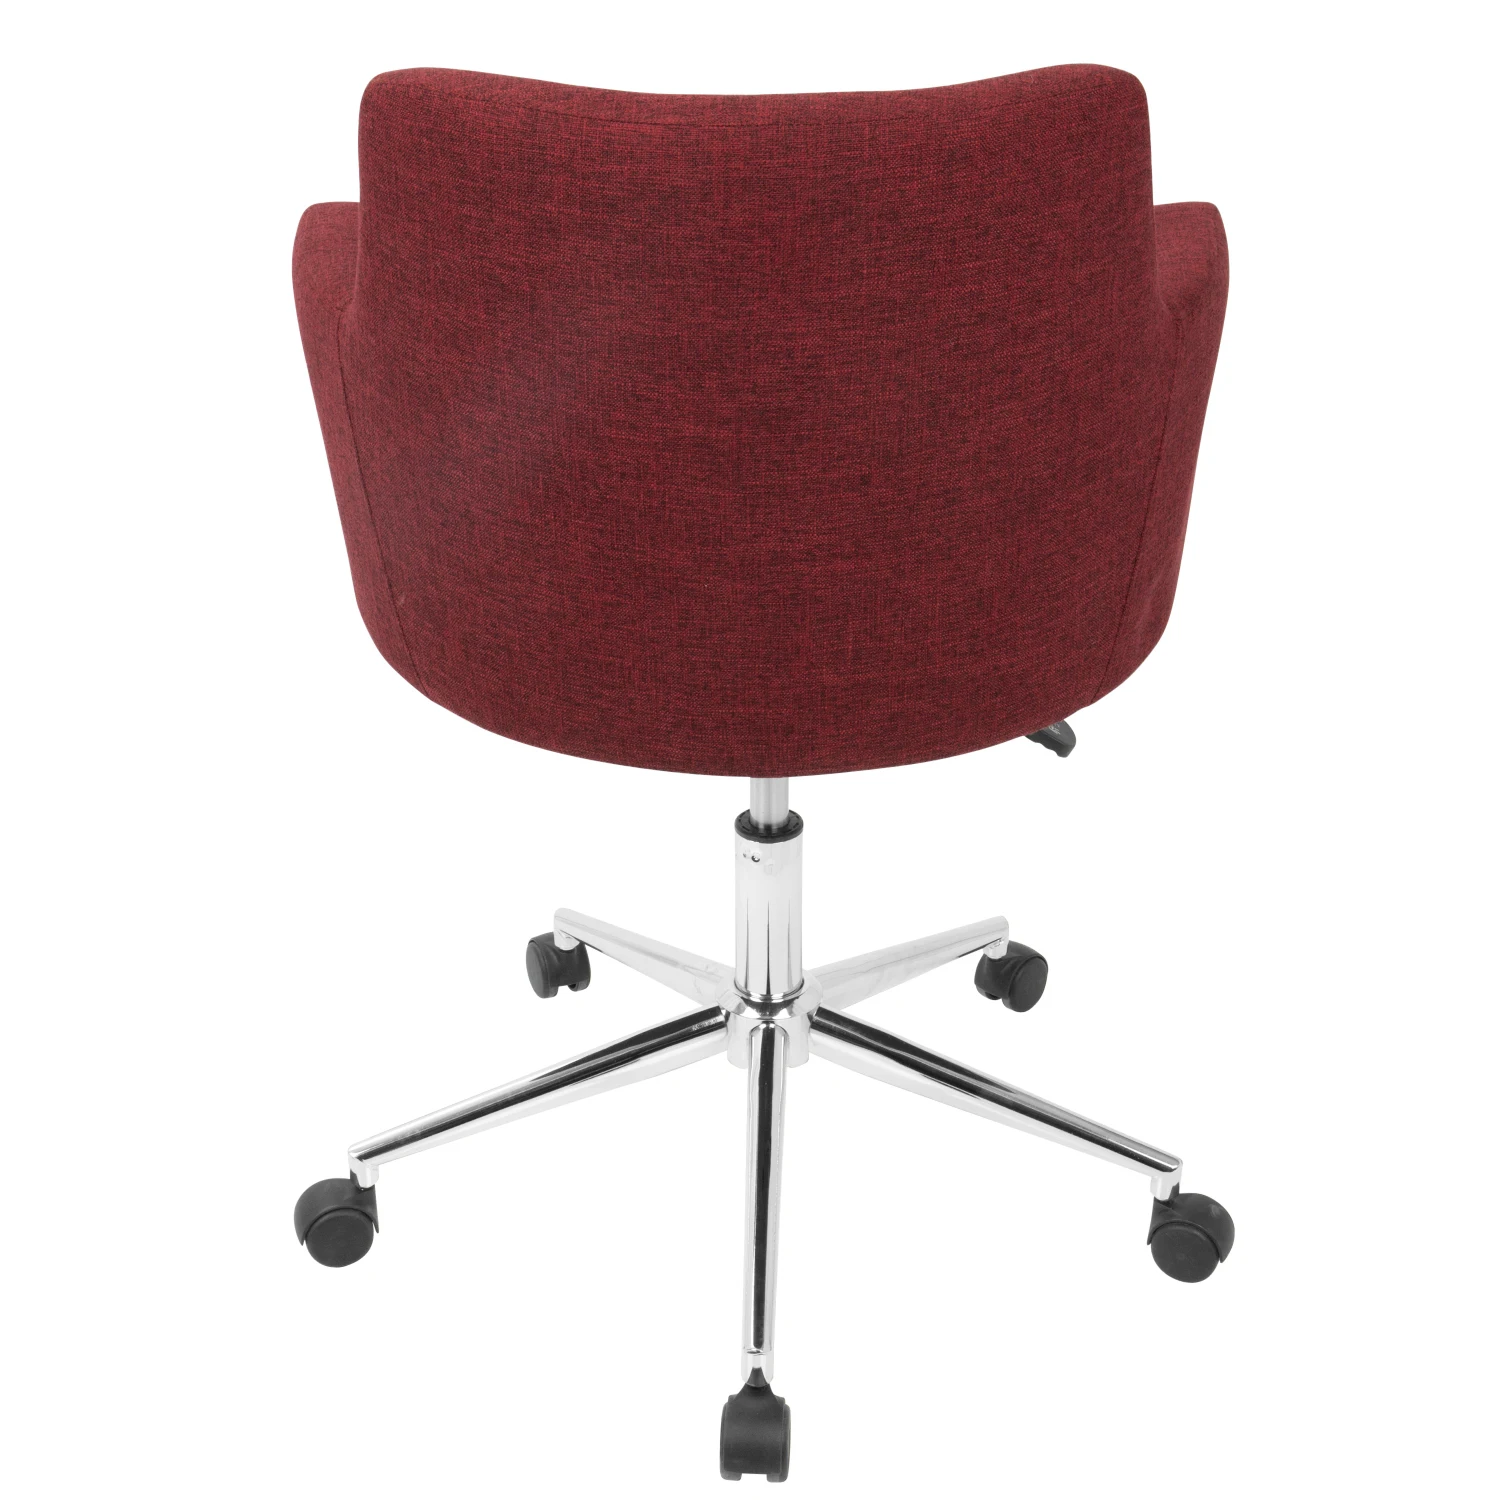 เก้าอี้สำนักงานแบบปรับได้สีแดงร่วมสมัยมีดีไซน์ทันสมัยและรองรับการยศาสตร์จาก lumisource